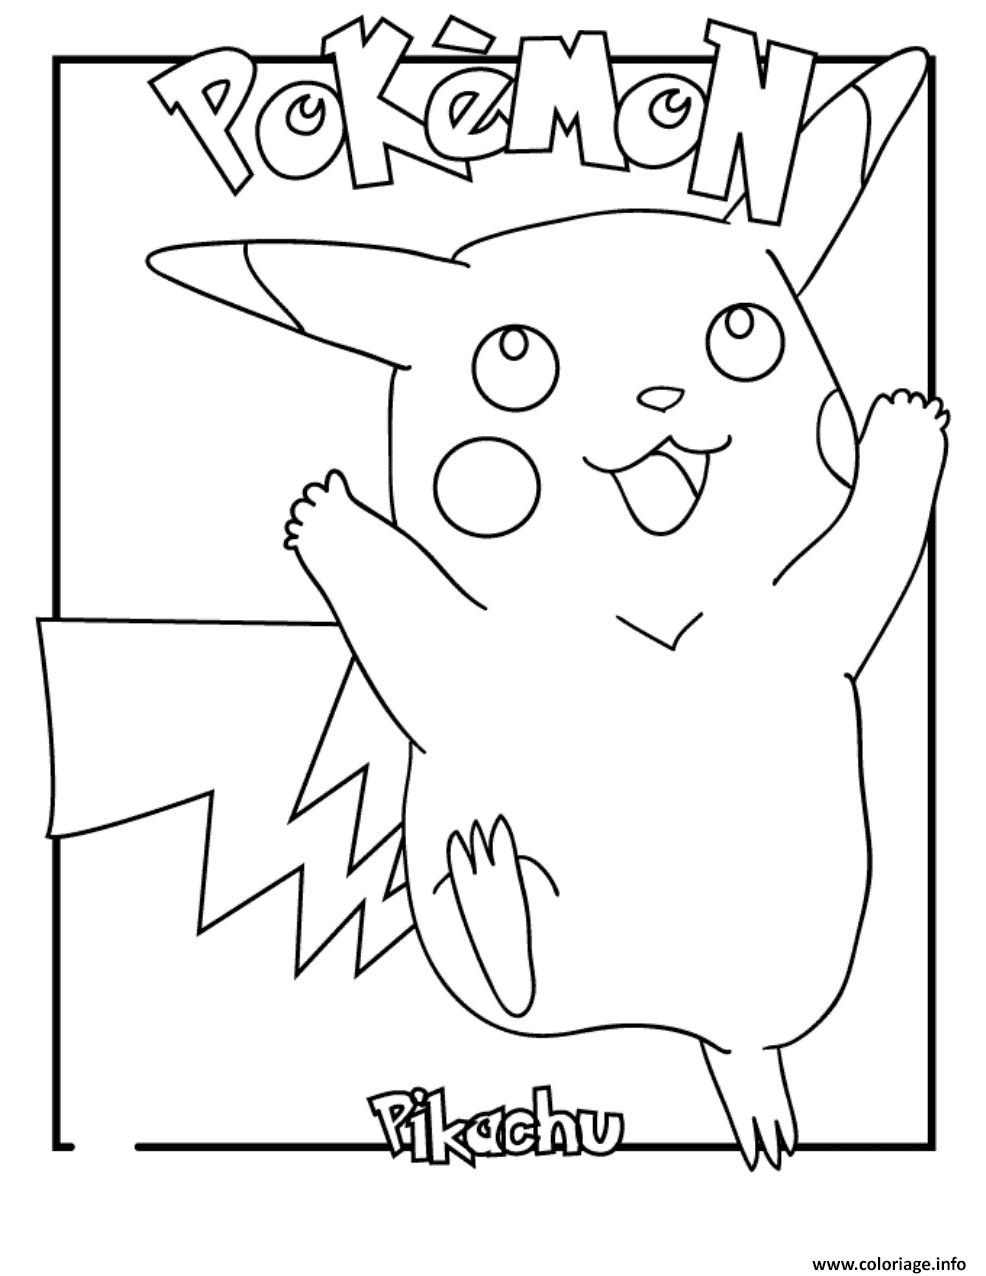 Dessin pokemon pikachu s6fdf Coloriage Gratuit à Imprimer